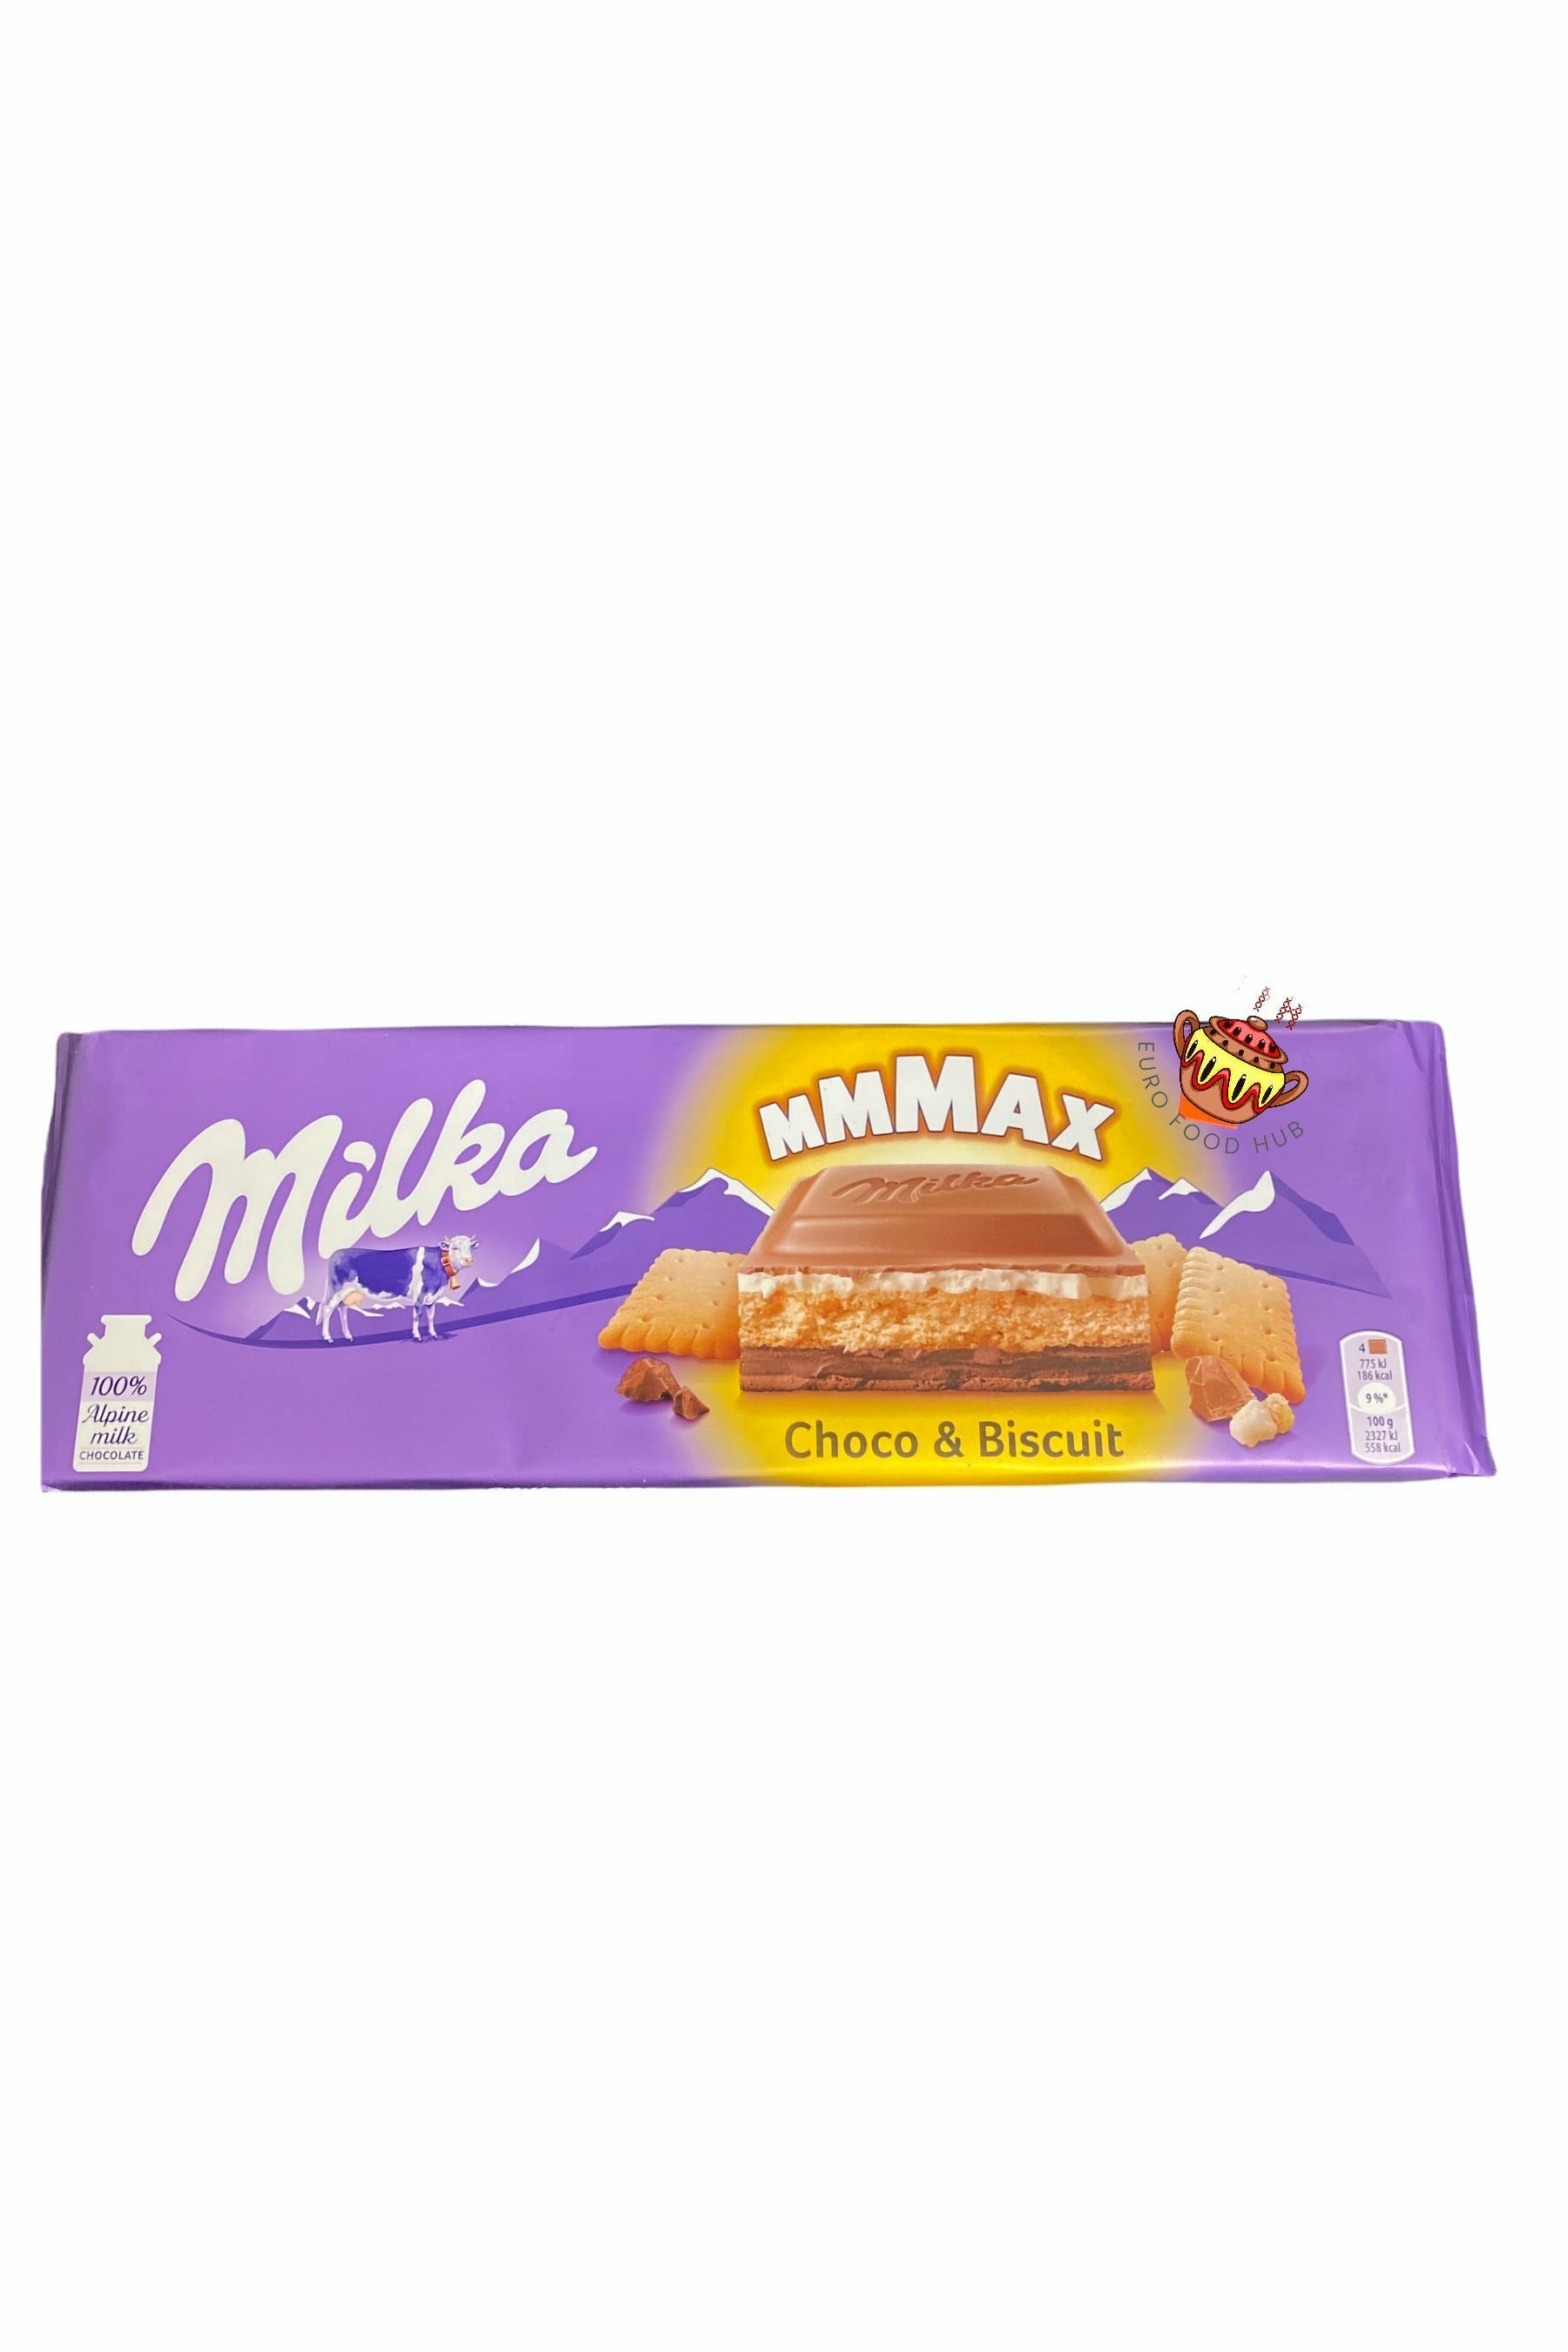 Milka Chocolate - Choco & Bisquit Max - 300g